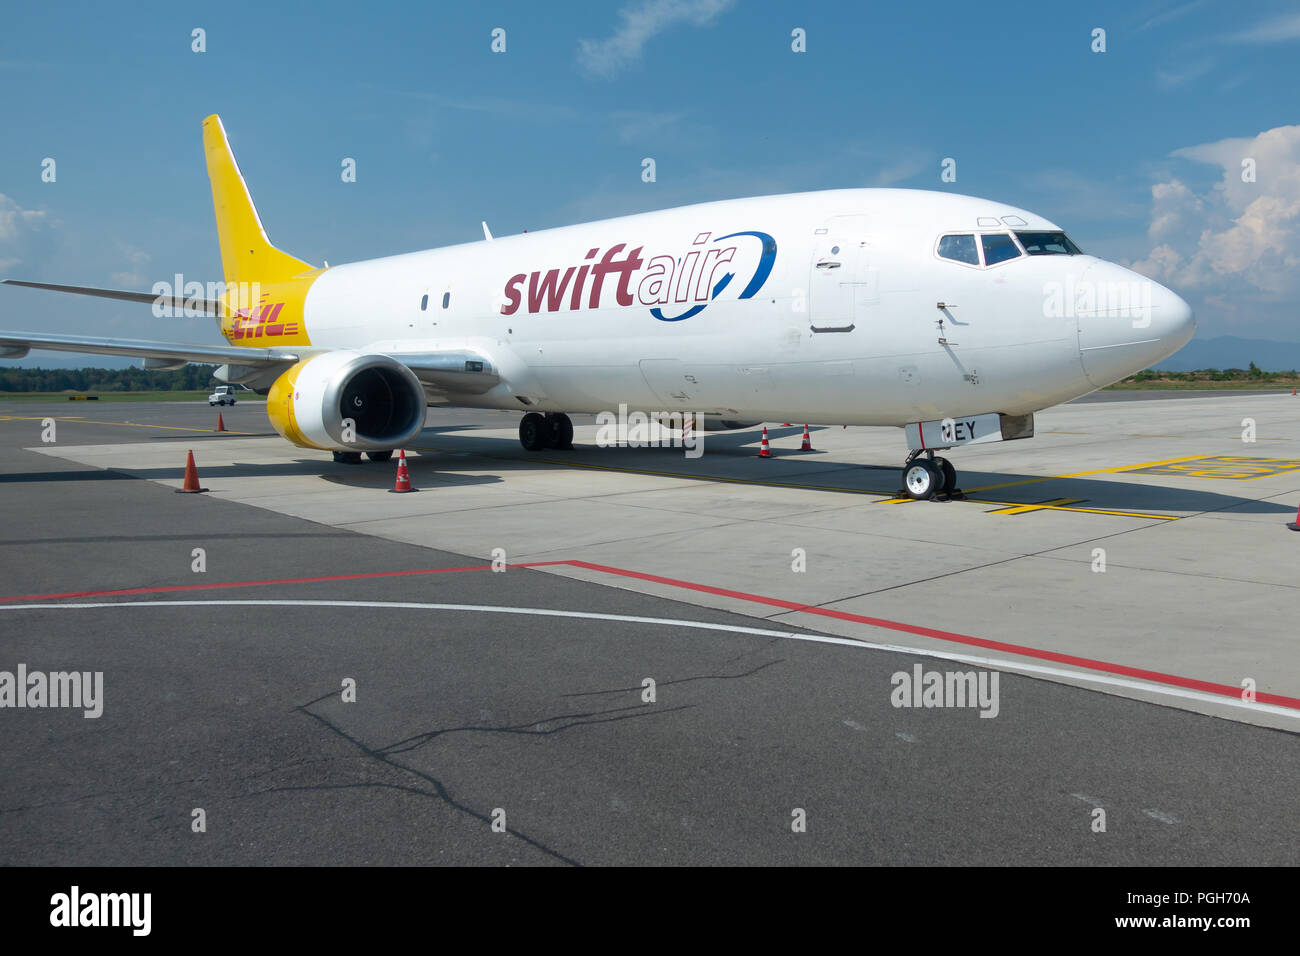 Brnik, Slovenija - 23 août 2018 : Swift Air Boeing B737 jaune avec logo DHL sur la queue à l'aéroport de Ljubljana en attente de chargement sur tarmac. Banque D'Images